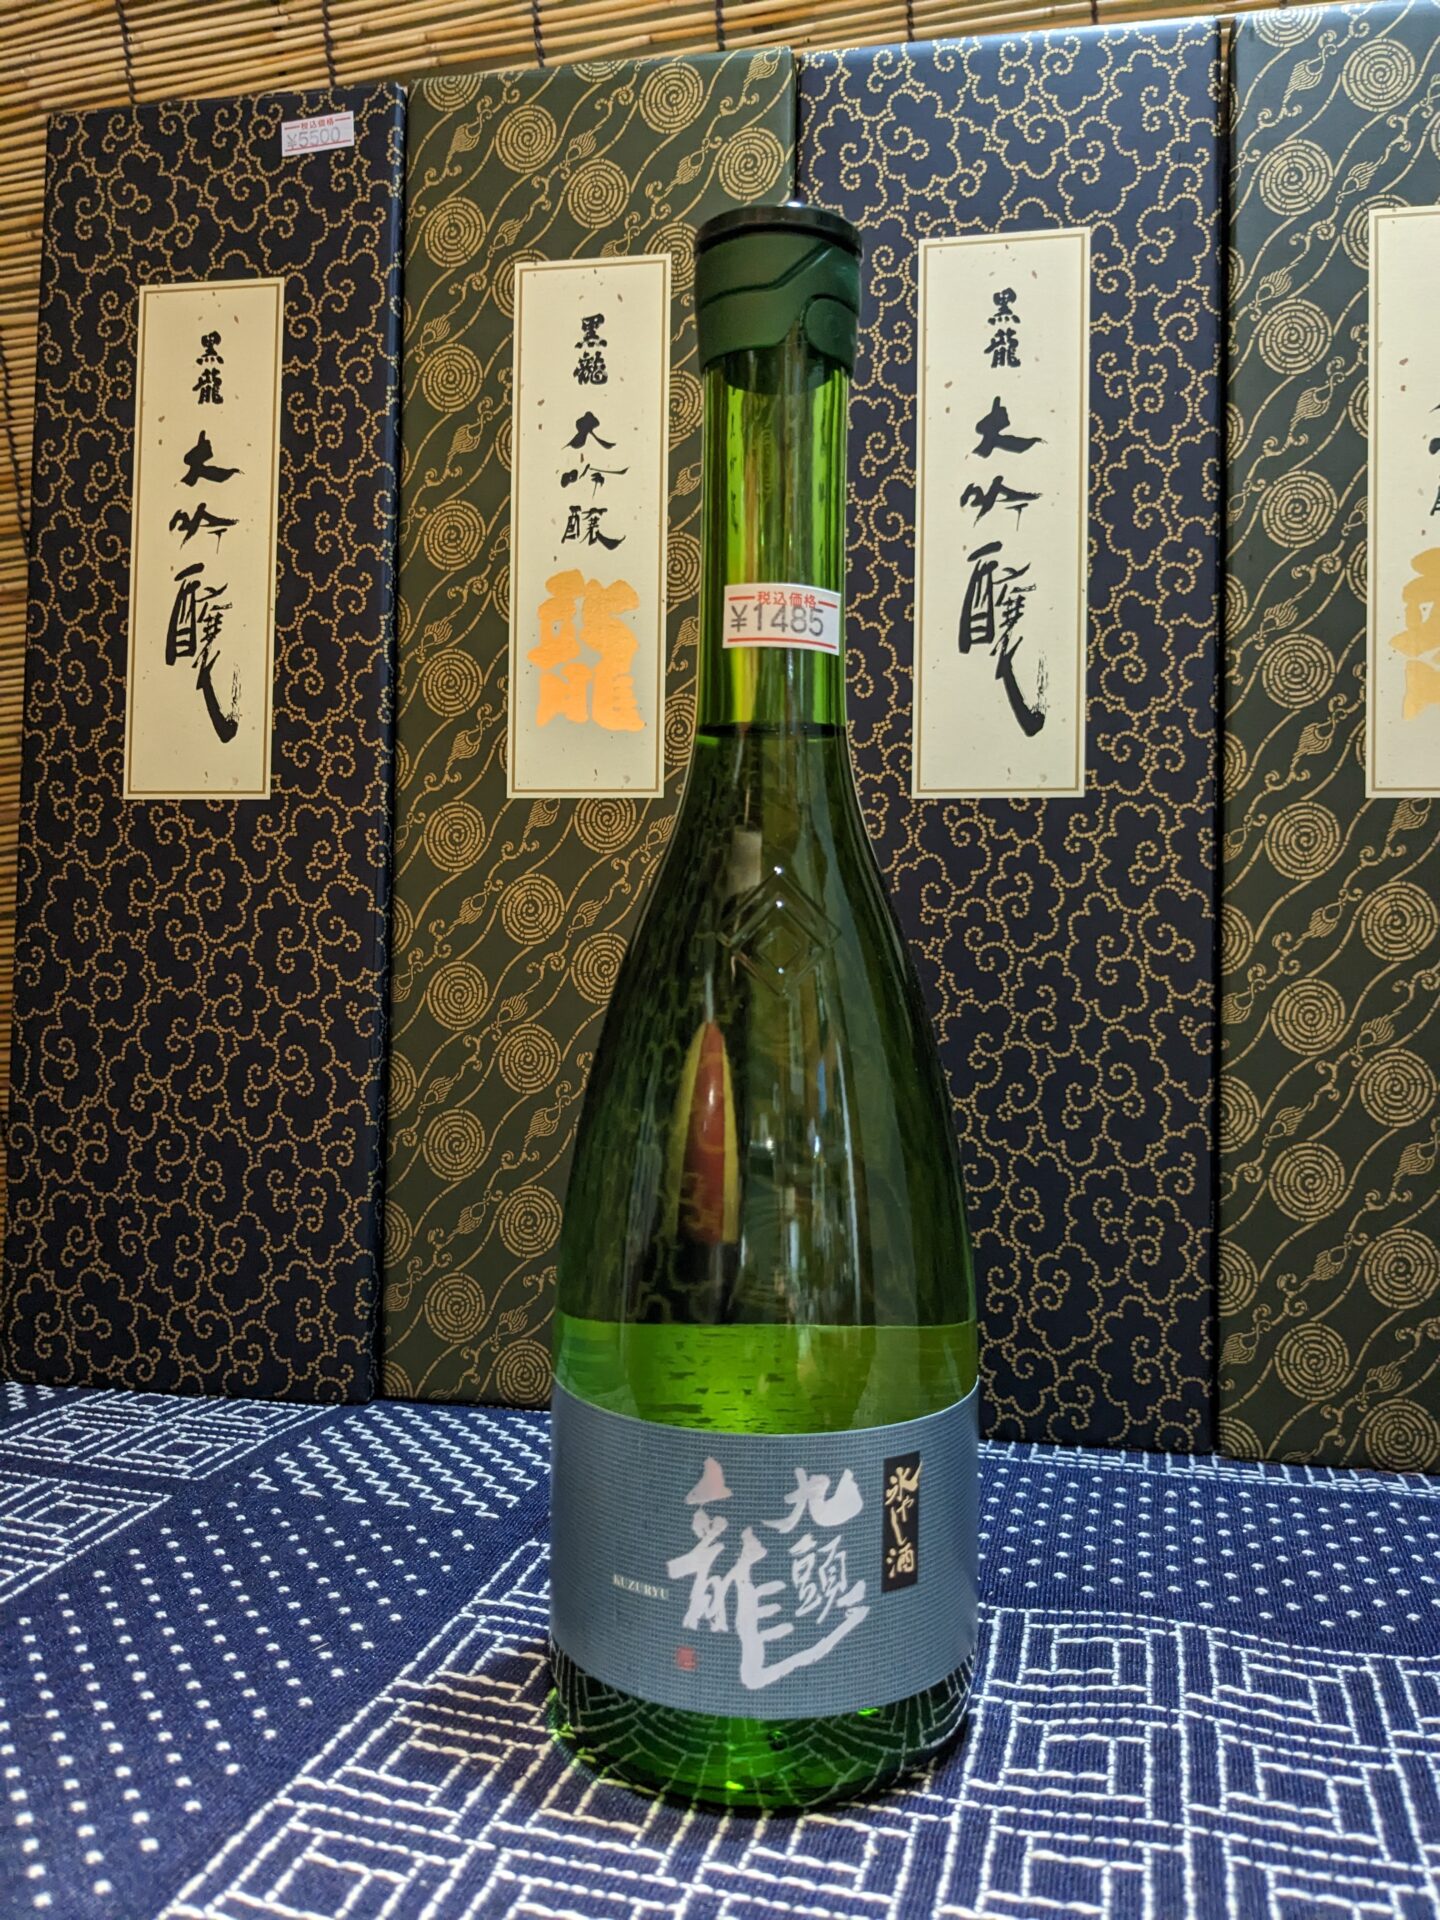 kuzuryu hiyashizake(copy)